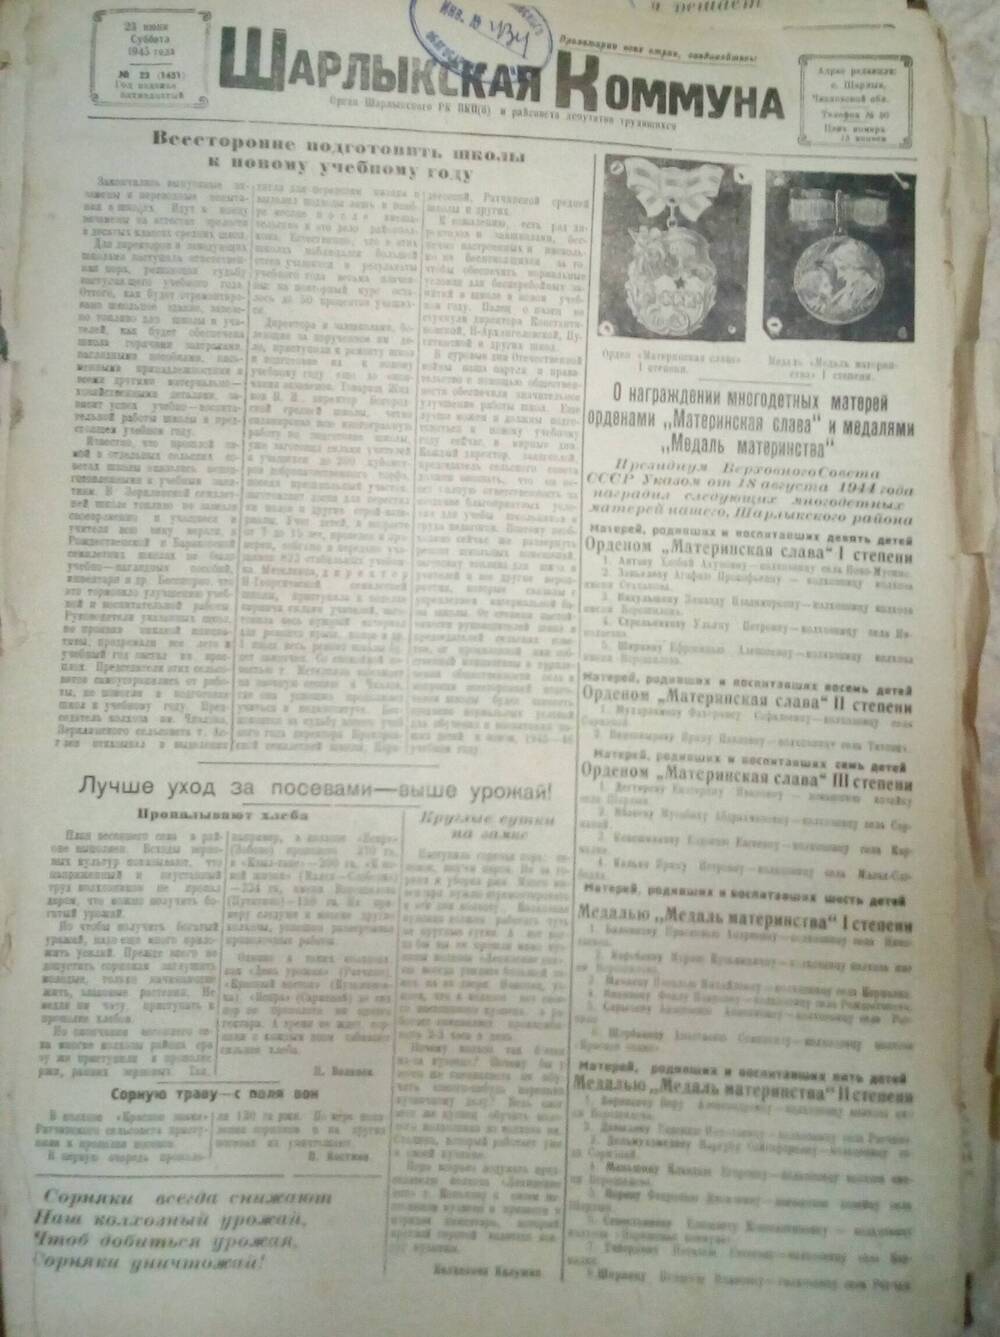 Подшивка газеты Шарлыкская коммуна за 1945, 1946 и 1947 годы.